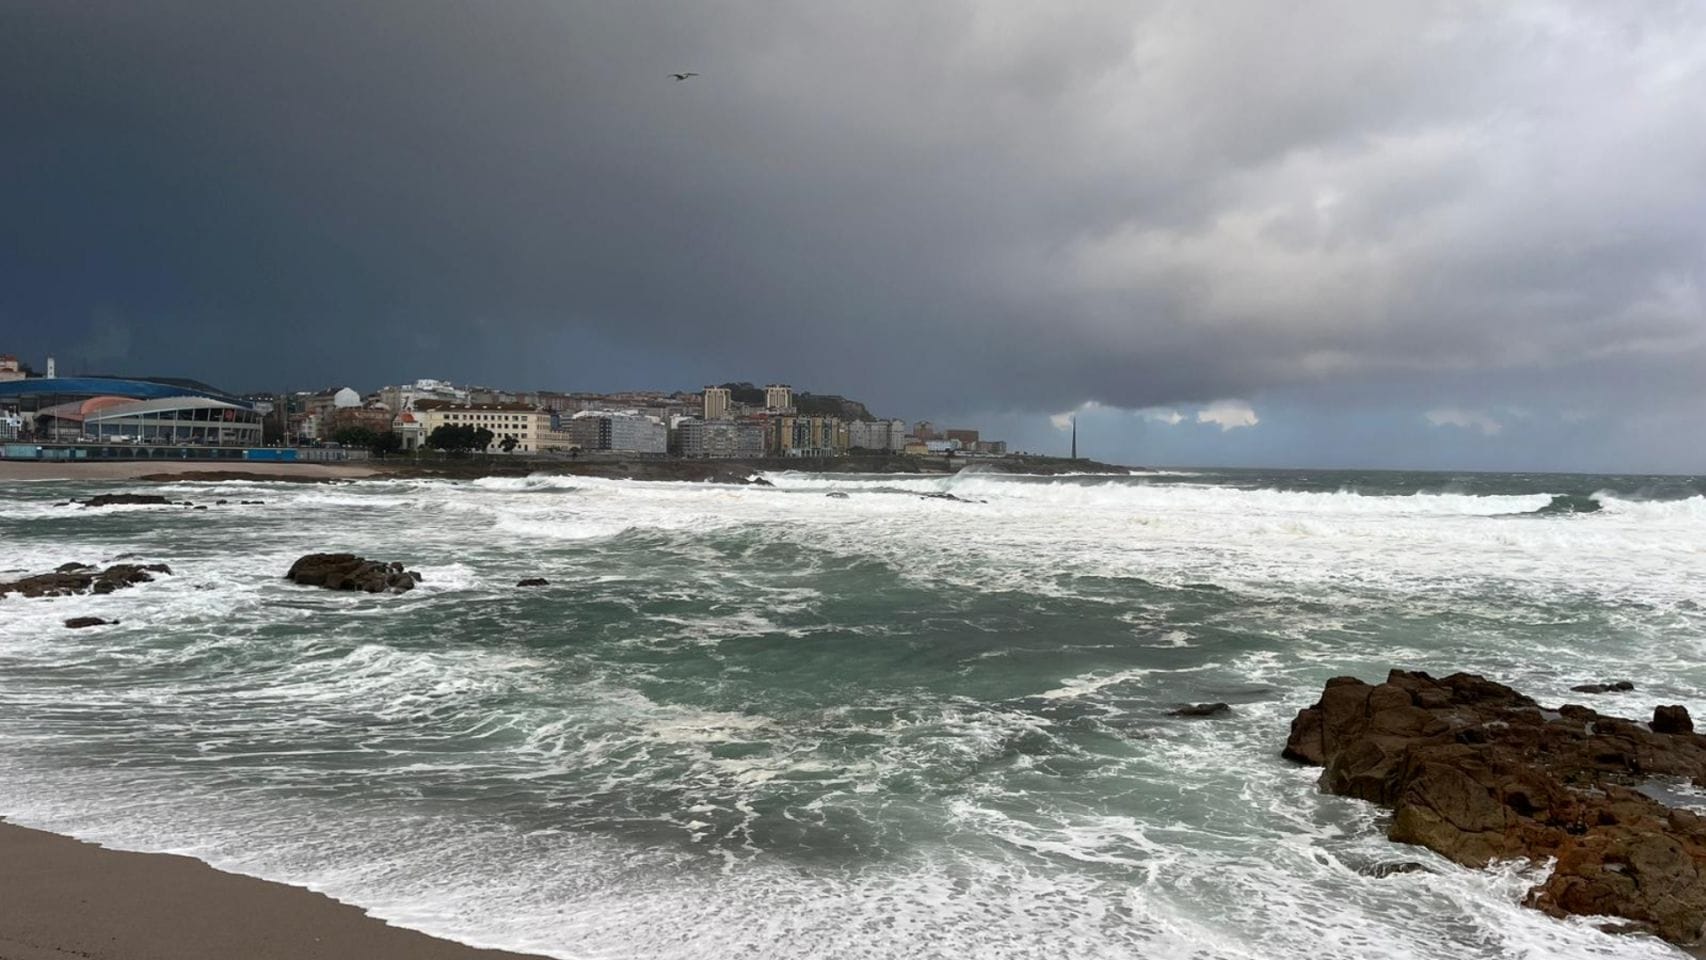 Jornada de temporal costero en A Coruña.